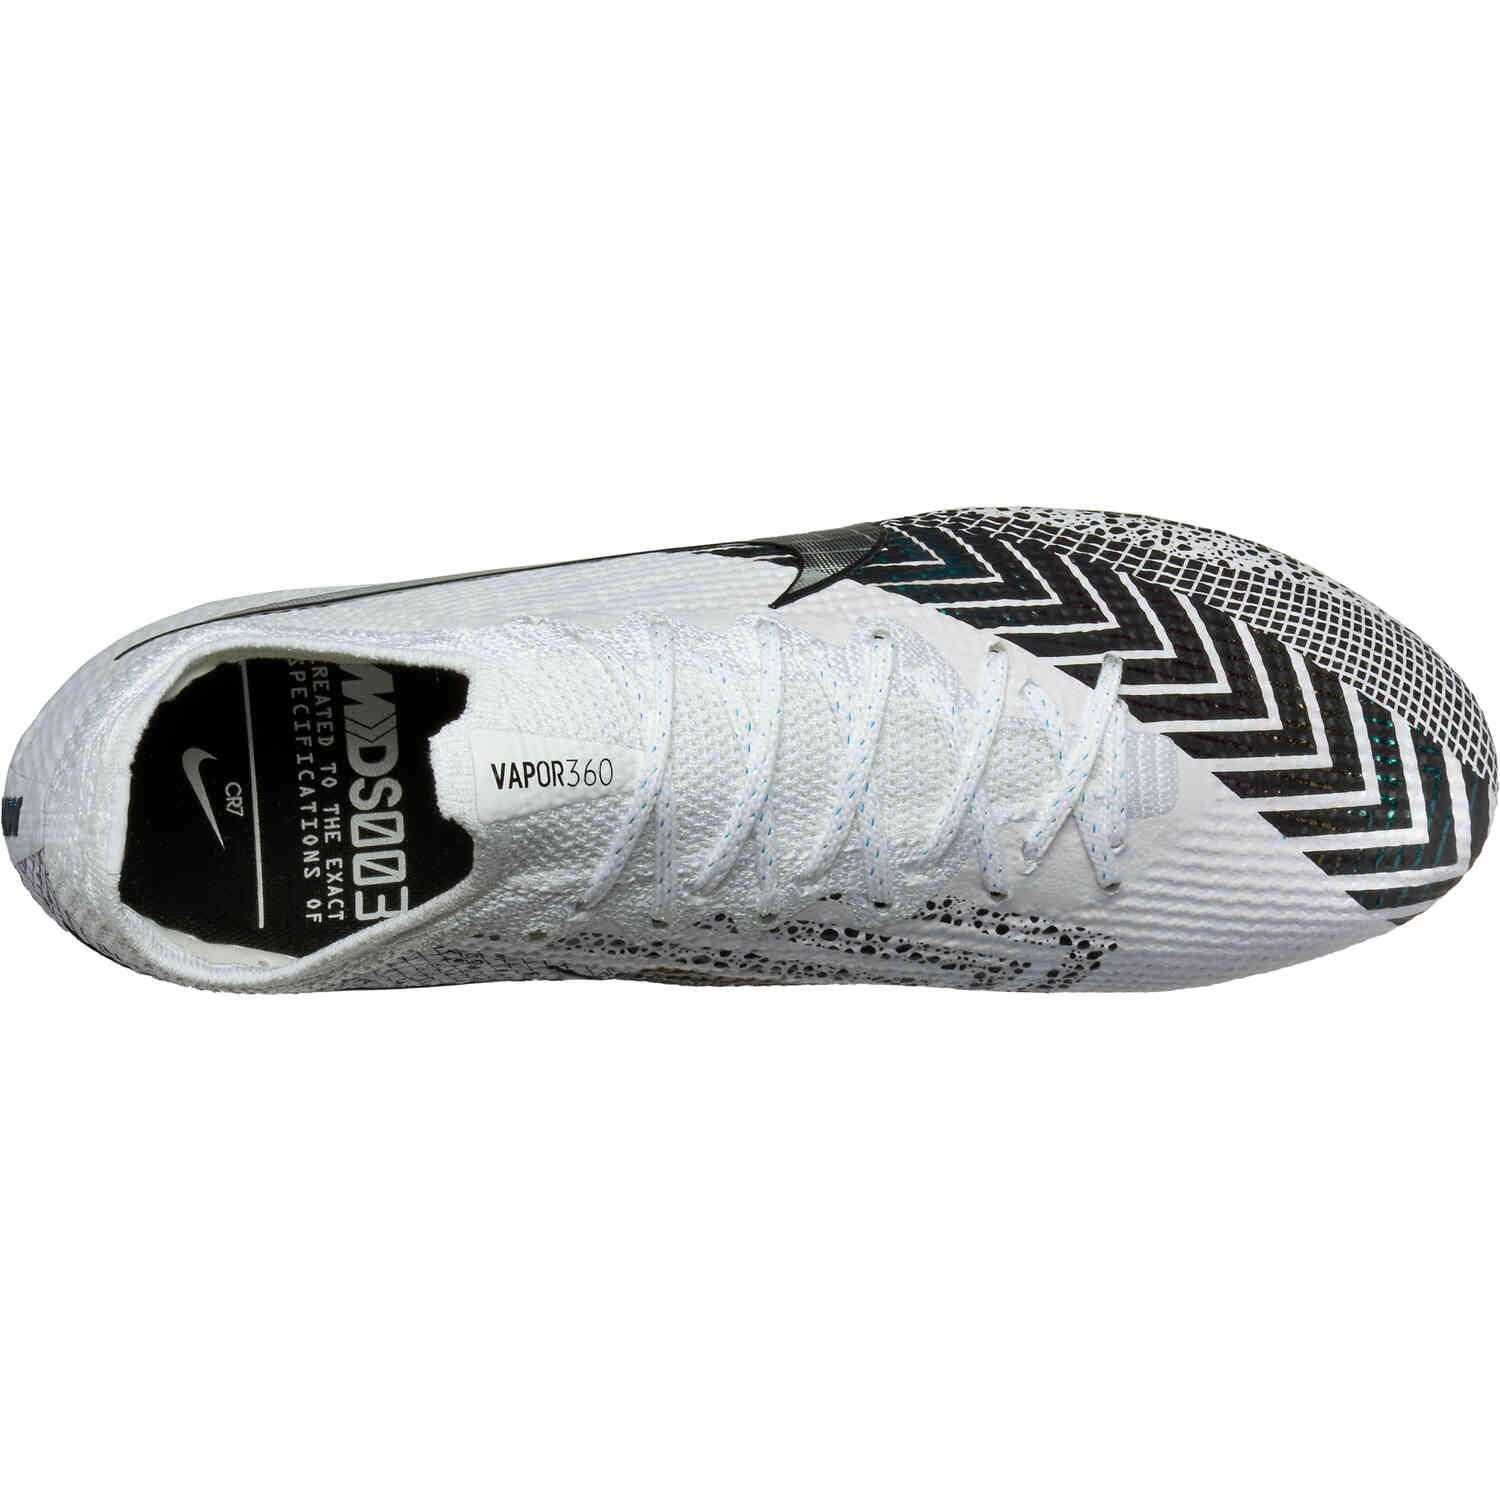 Nike Mercurial Vapor 13 Elite MDS AG Pro 'Dream Speed - White Black' -  CJ1294-110